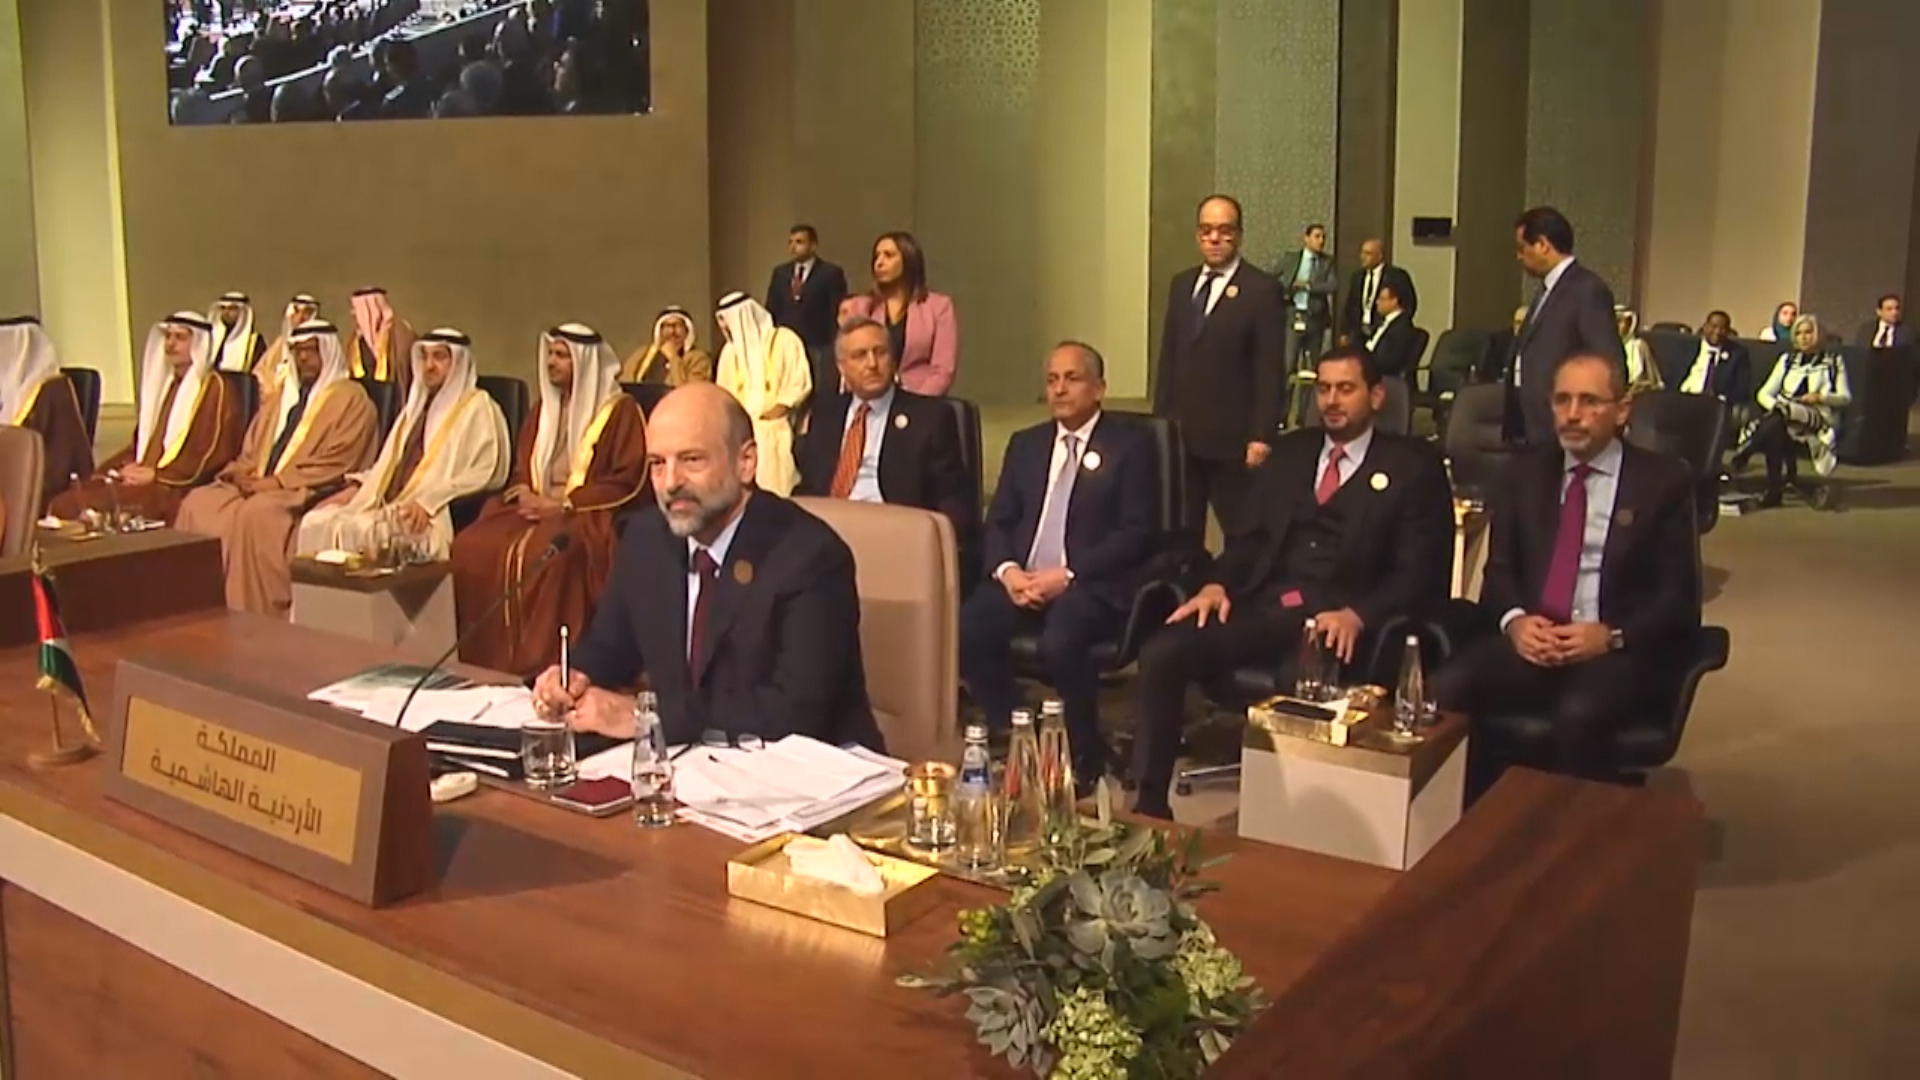 رئيس الوزراء عمر الرزاز يترأس الوفد الأردني المشارك في القمة العربية التنموية الاقتصادية والاجتماعية في بيروت، 20 يناير 2019. (المملكة)